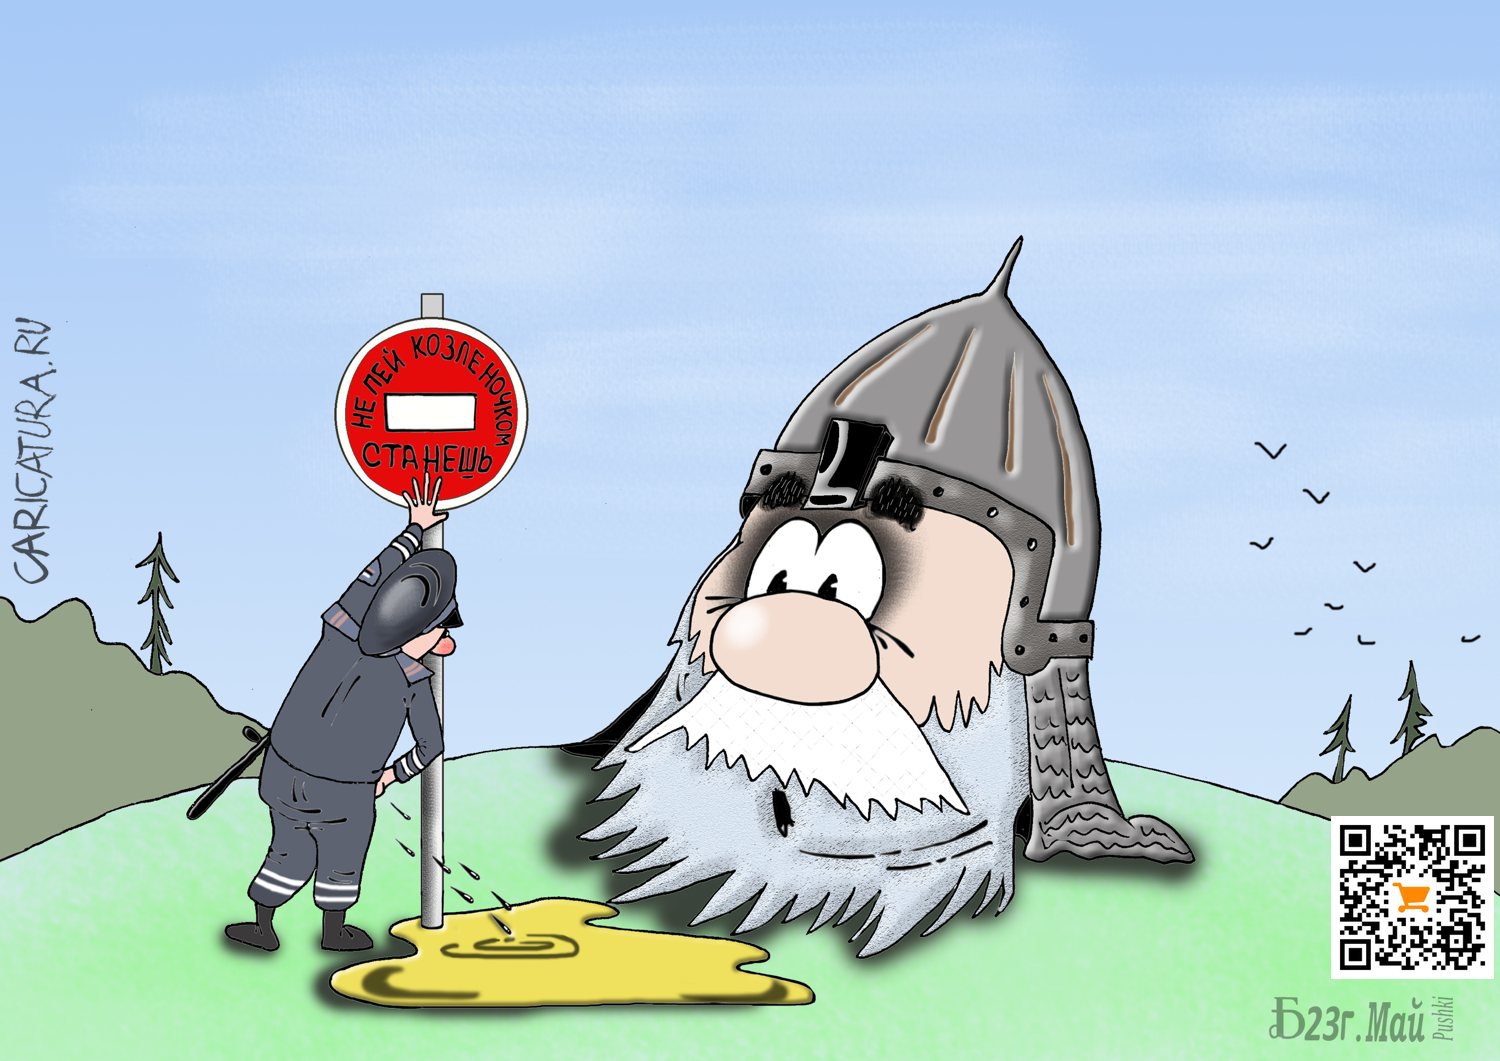 Карикатура "ПроСказки", Борис Демин